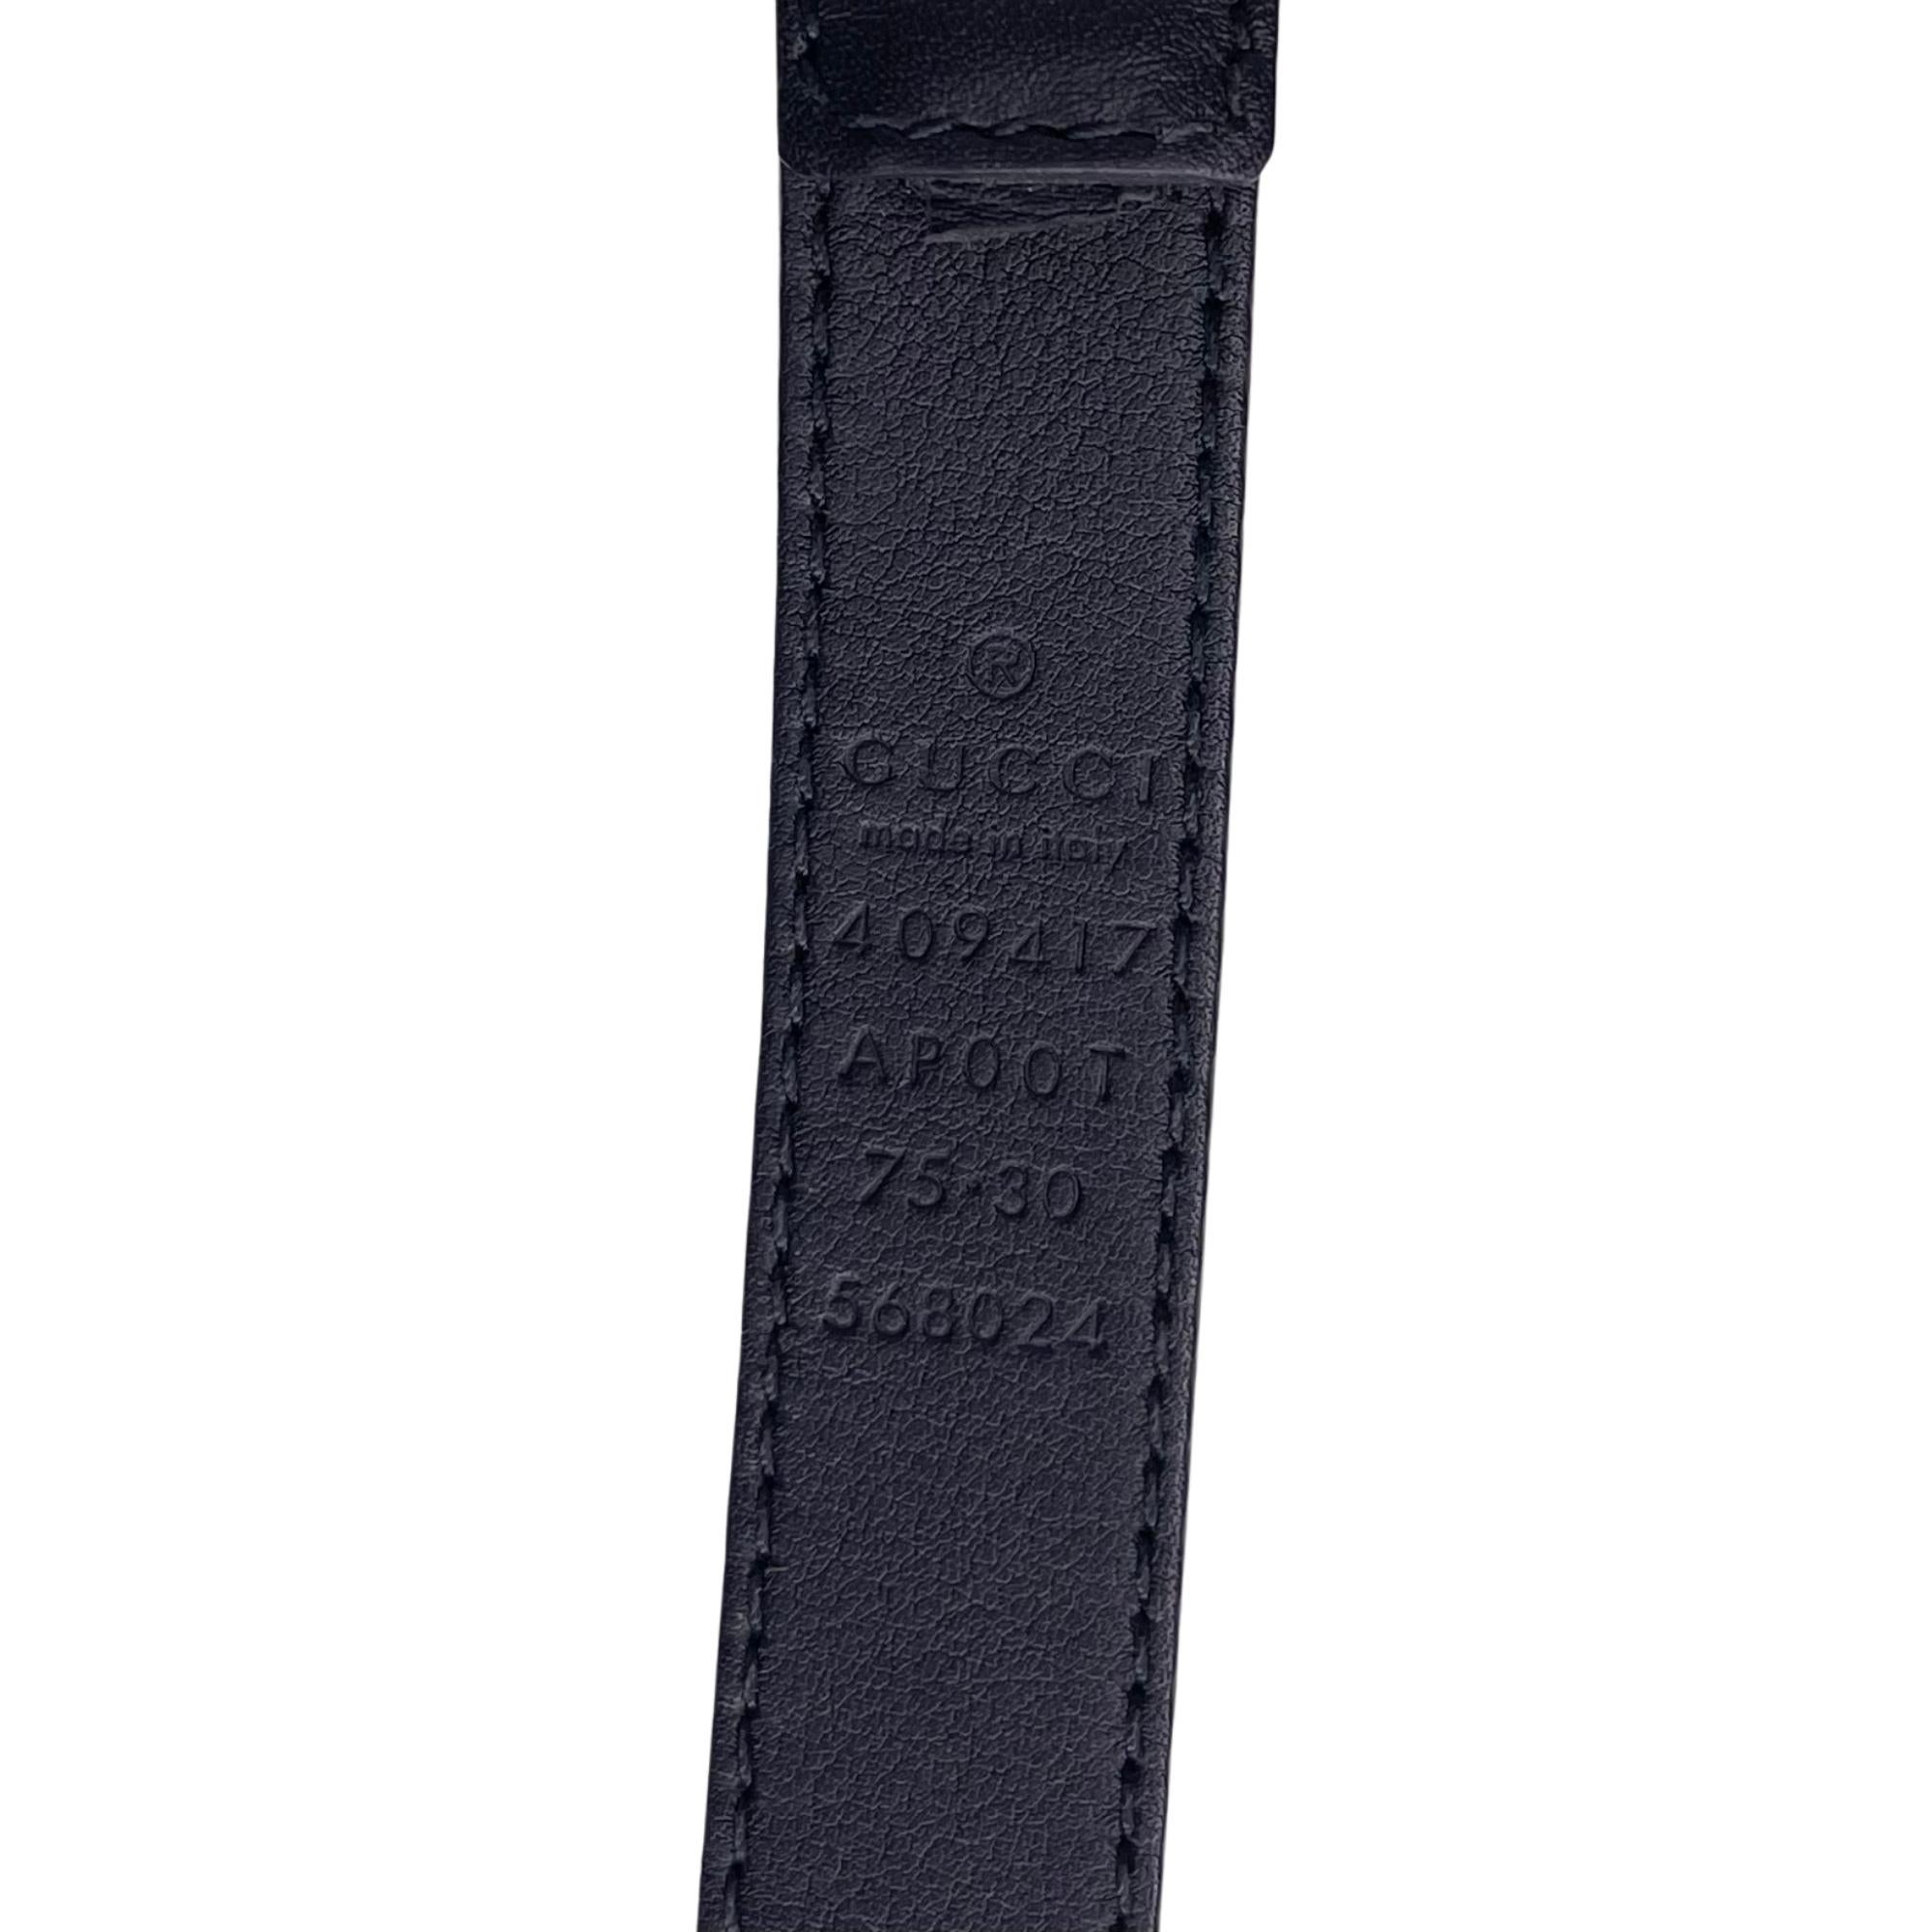 thin gucci belt